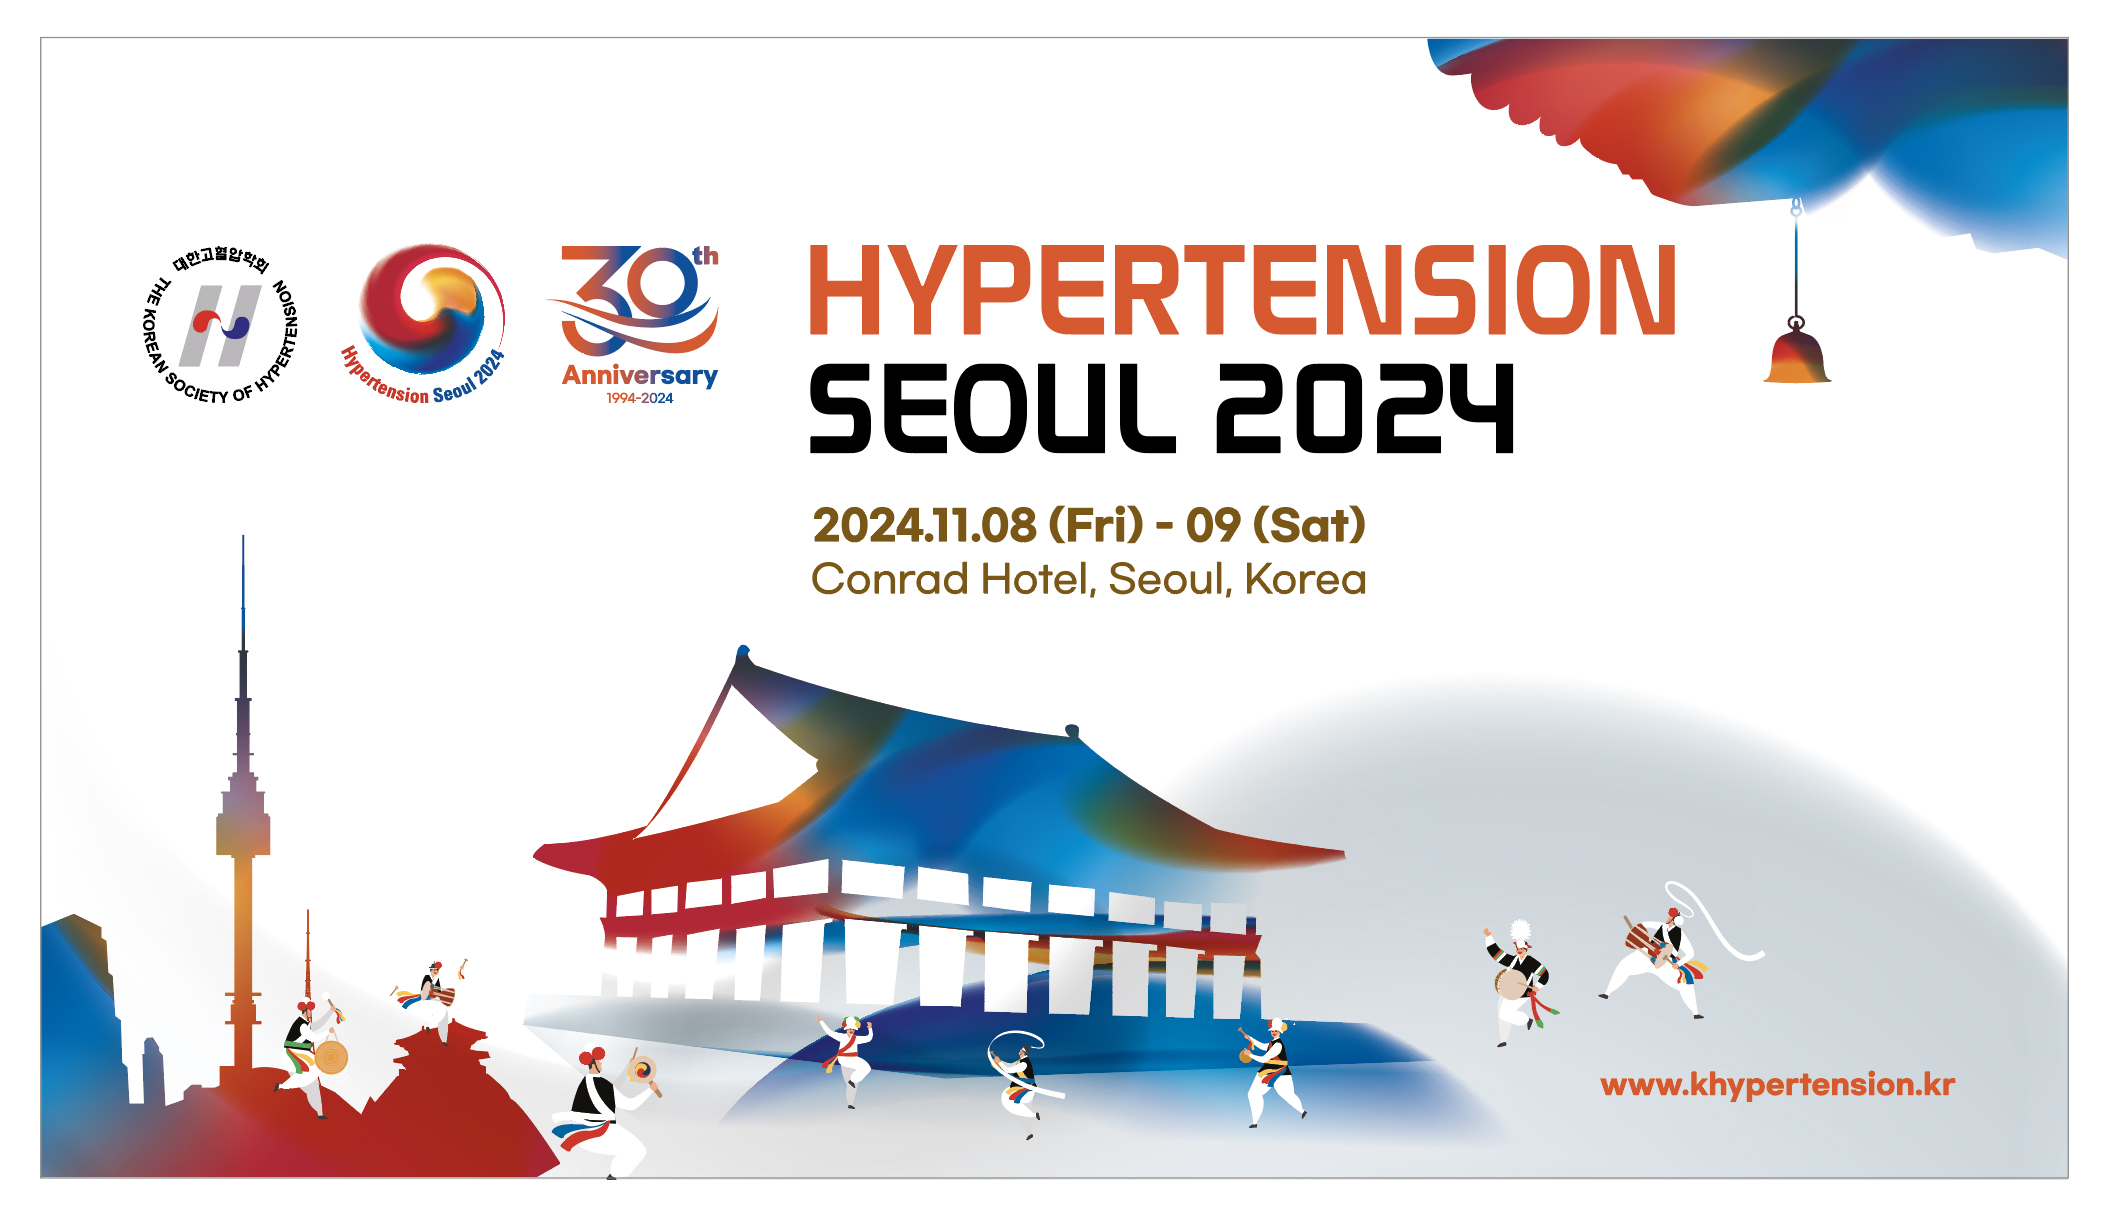 [대한고혈압학회] Hypertension Seoul 2024, 제61회 추계국제학술대회